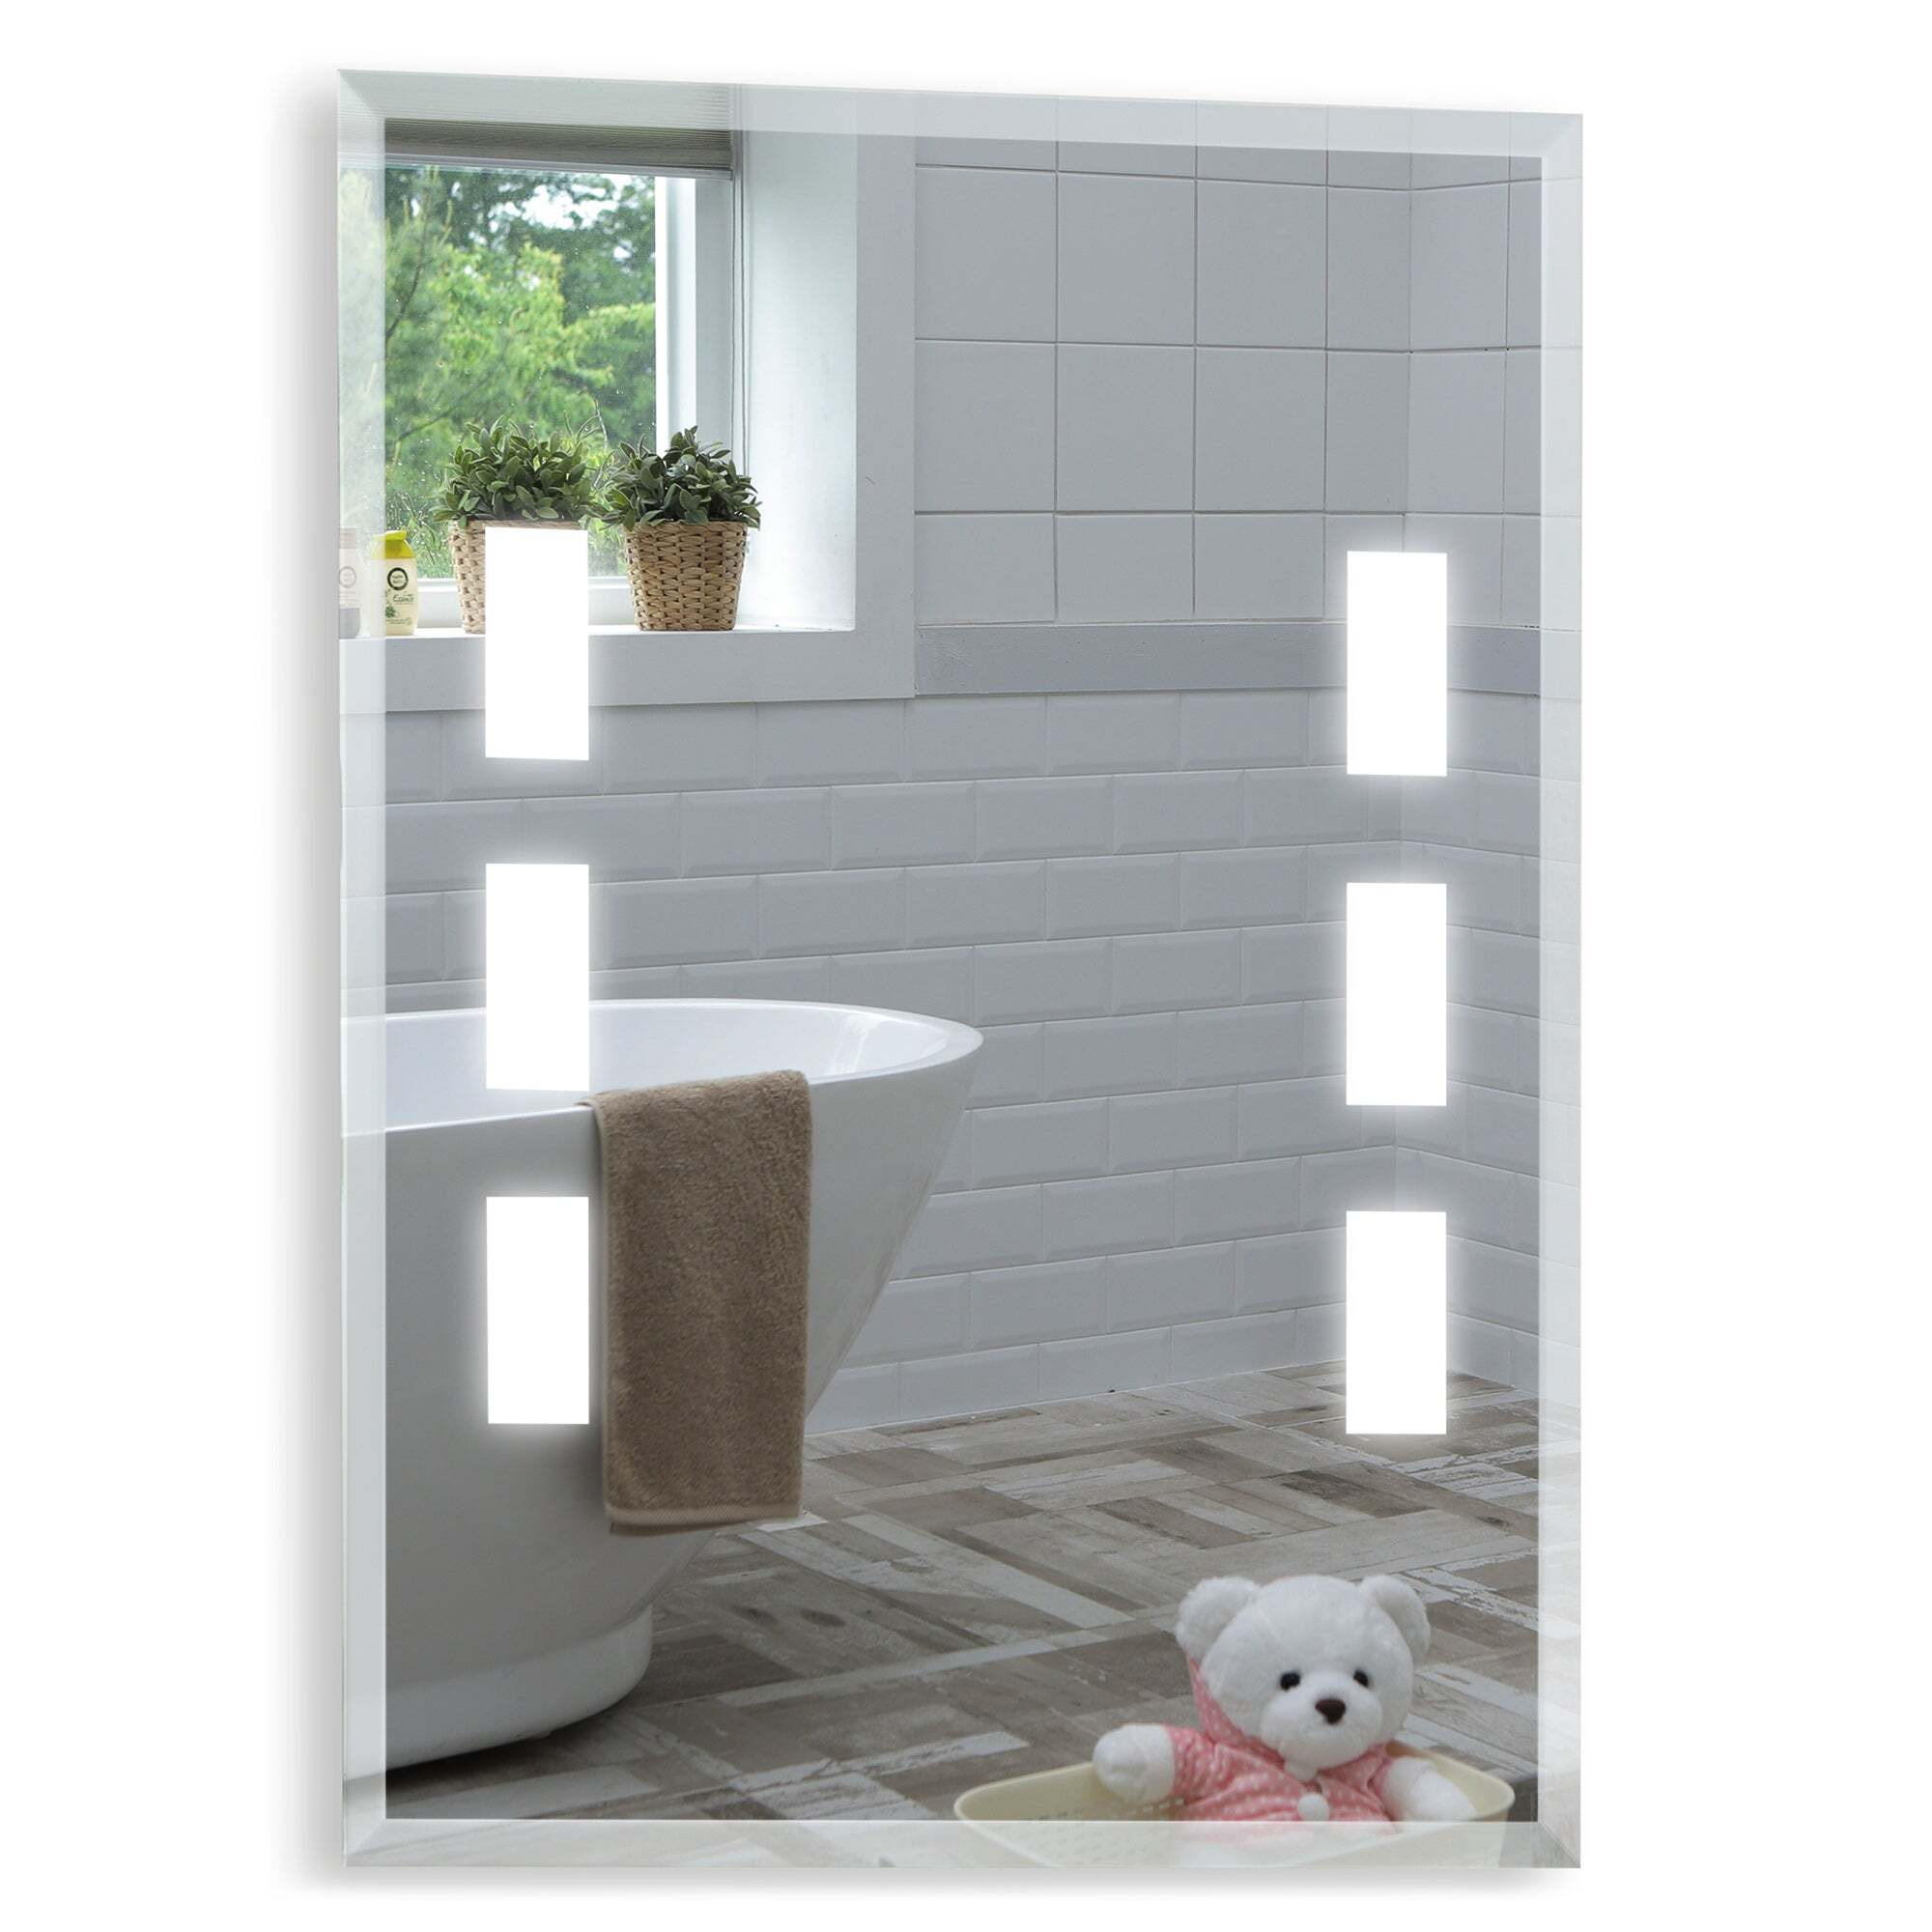 Neptune LED Illuminated Bathroom Wall Mirror: Size-60Hx45Wcm YJ5307